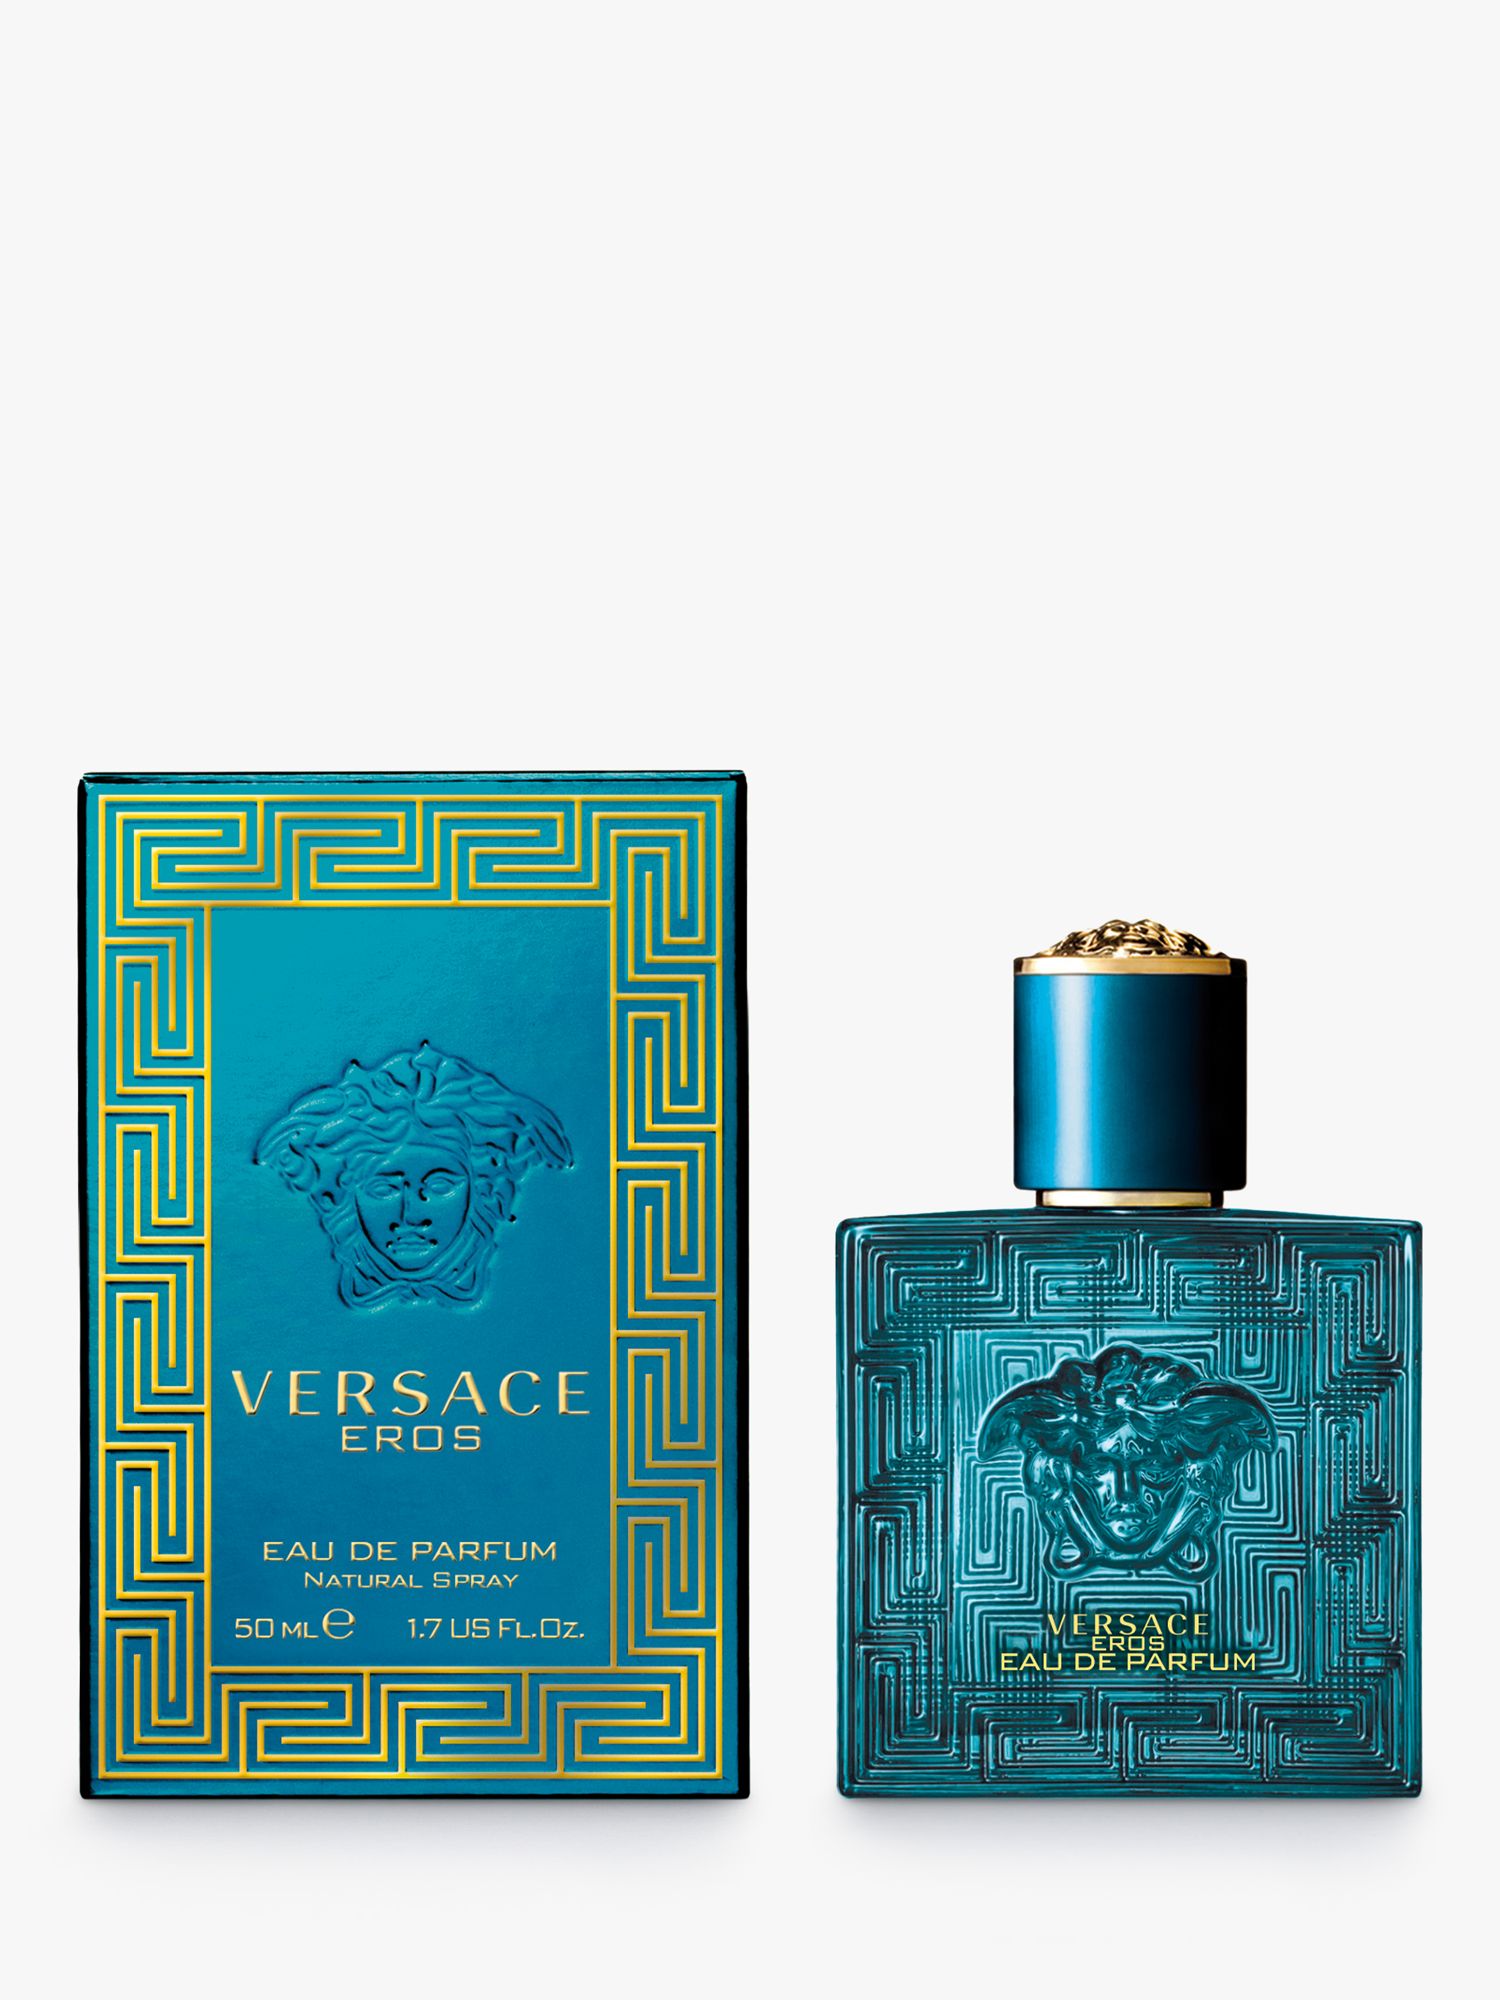 Versace Eros Eau de Parfum, 50ml